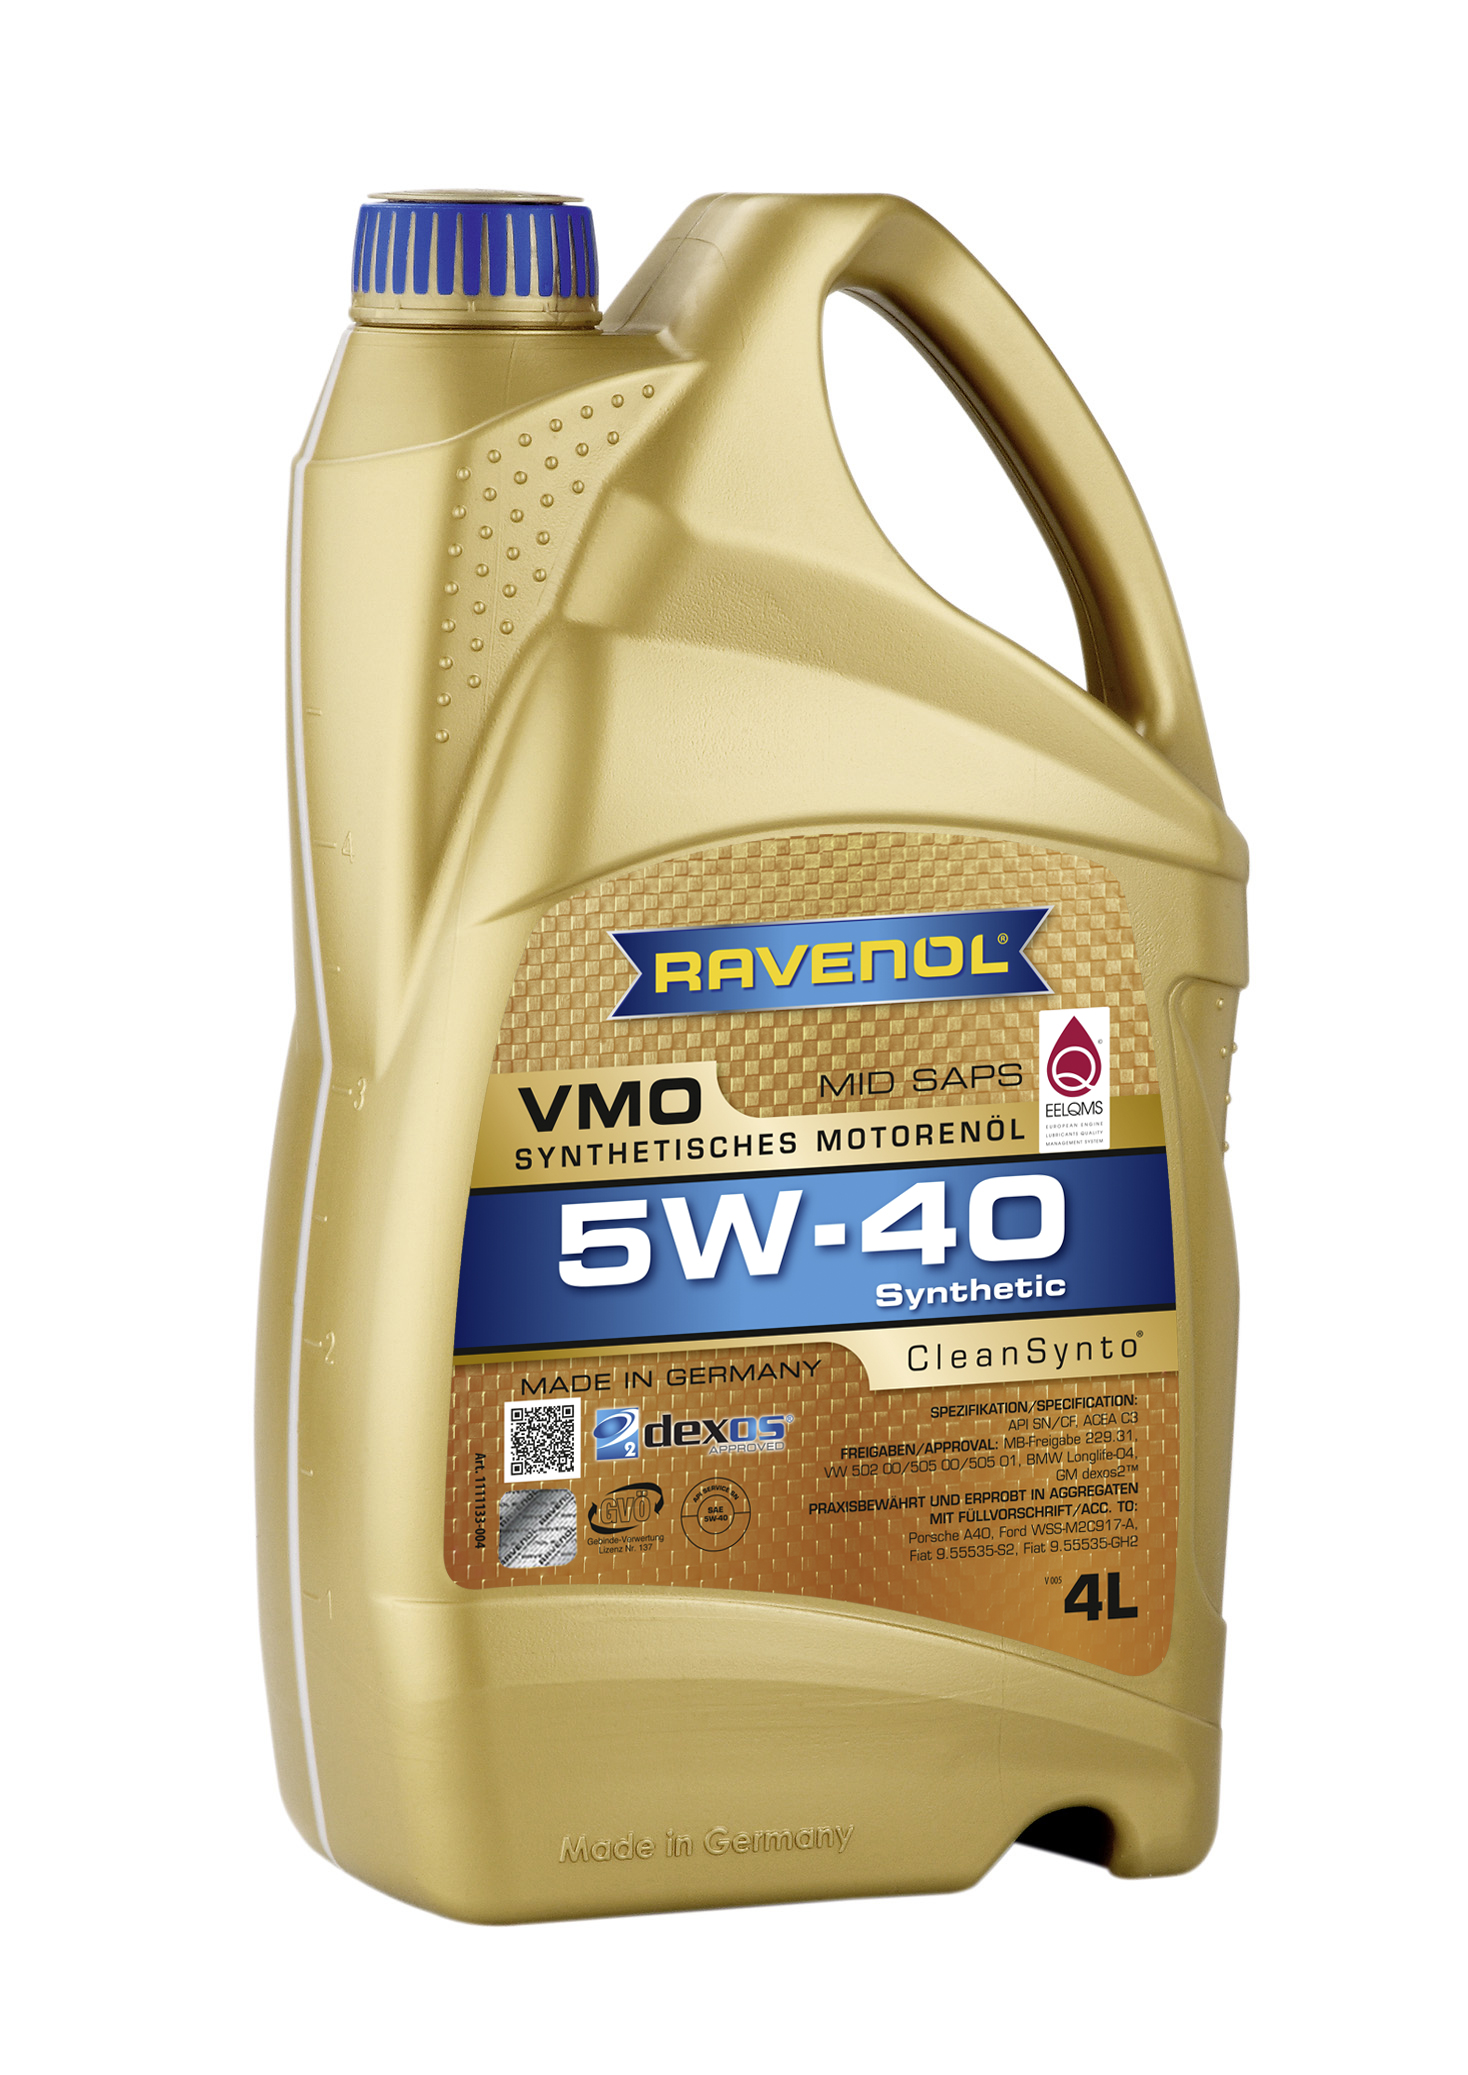 Ravenol Vollsynthetisches Multiöl VMO 5W-40 4L